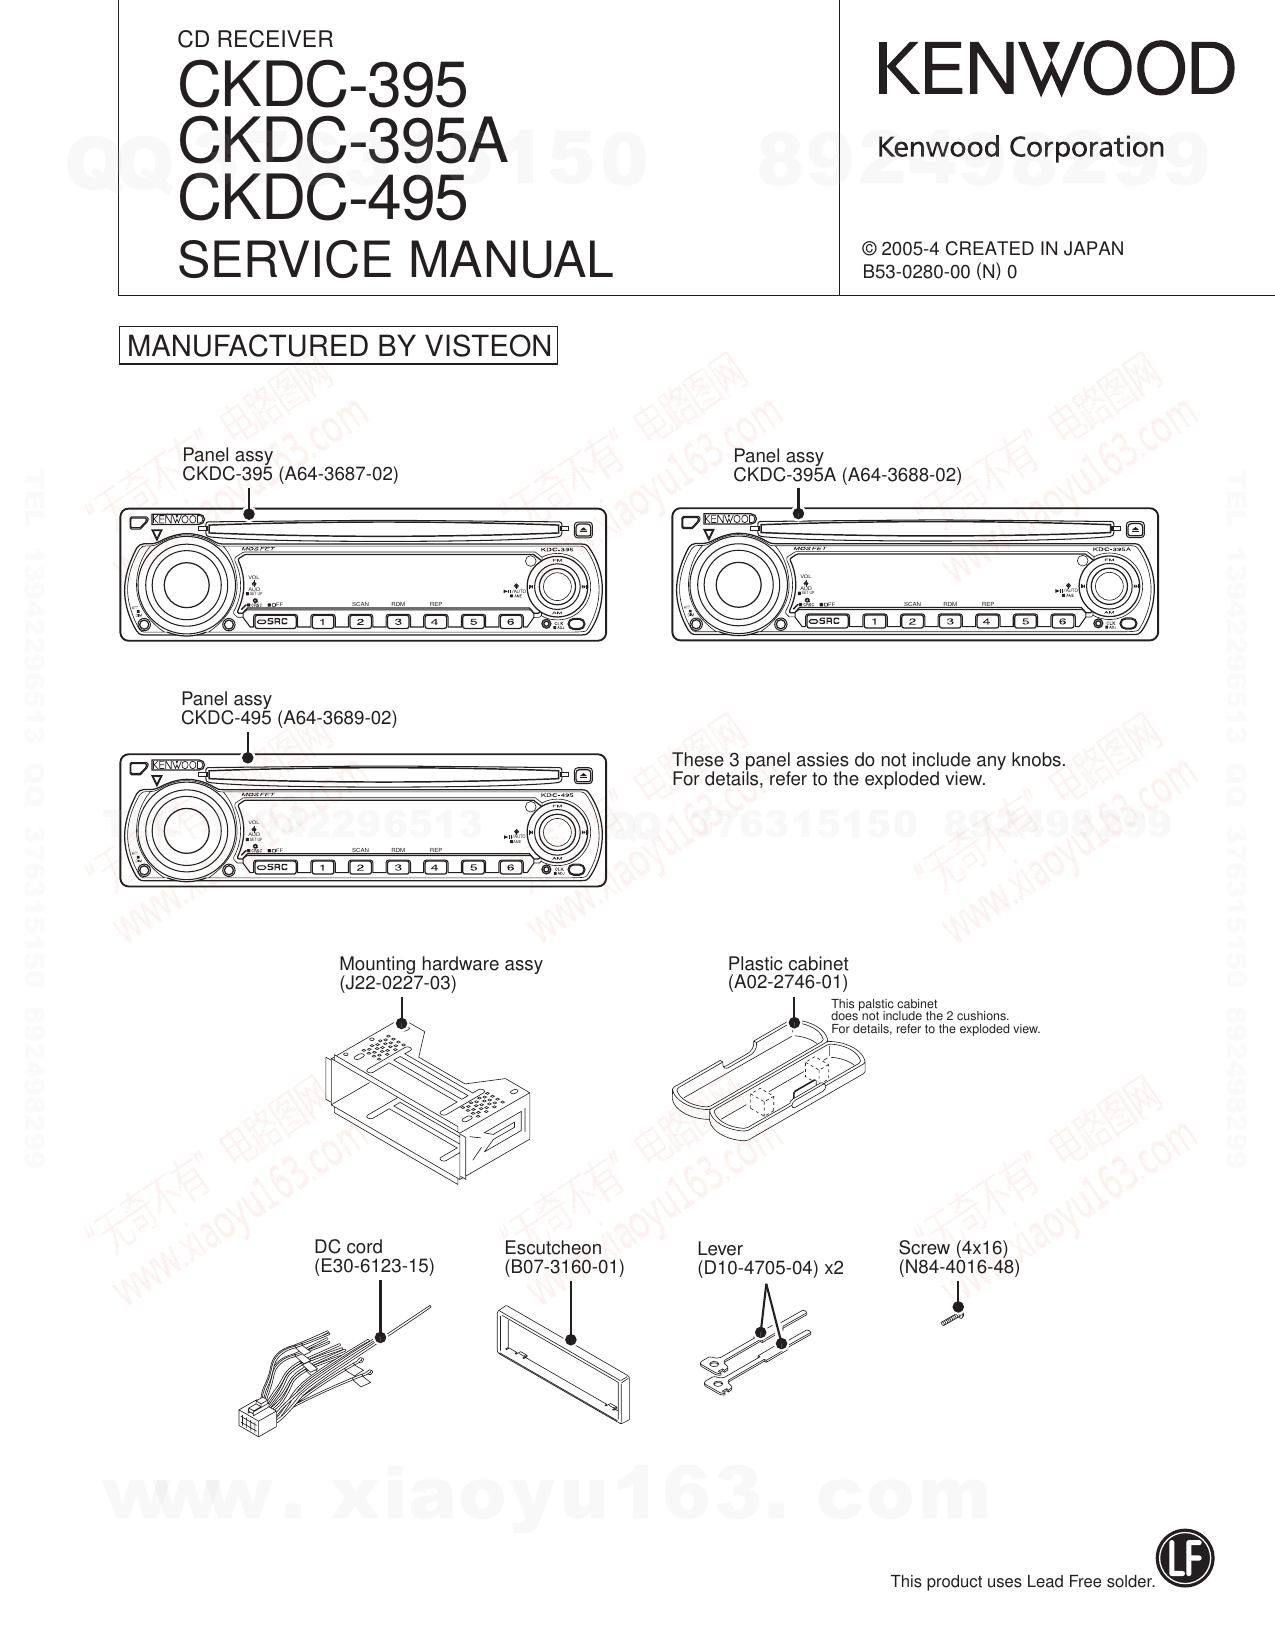 Kenwood CKDC 495 Service Manual